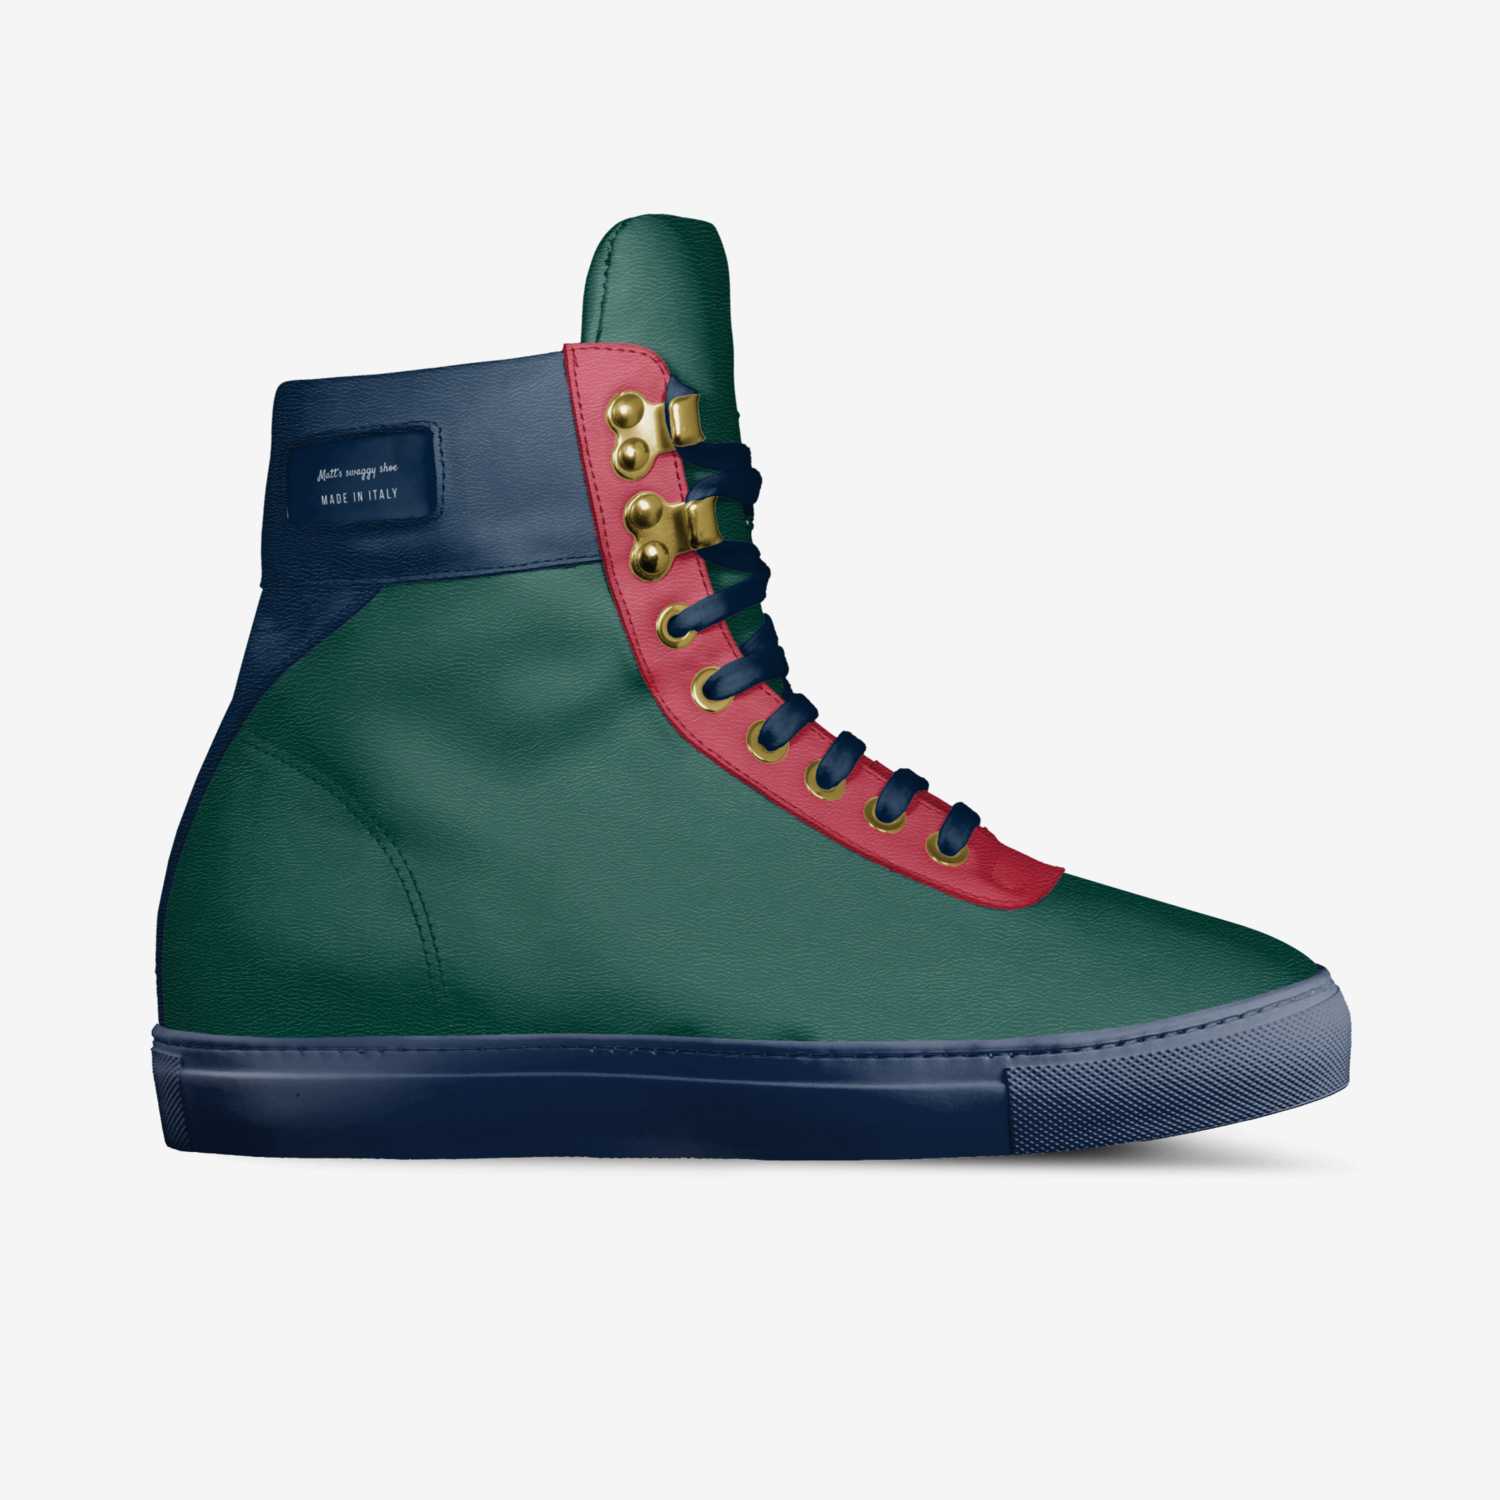 Matt’s swaggy shoe | A Custom Shoe concept by Mathew Paglino